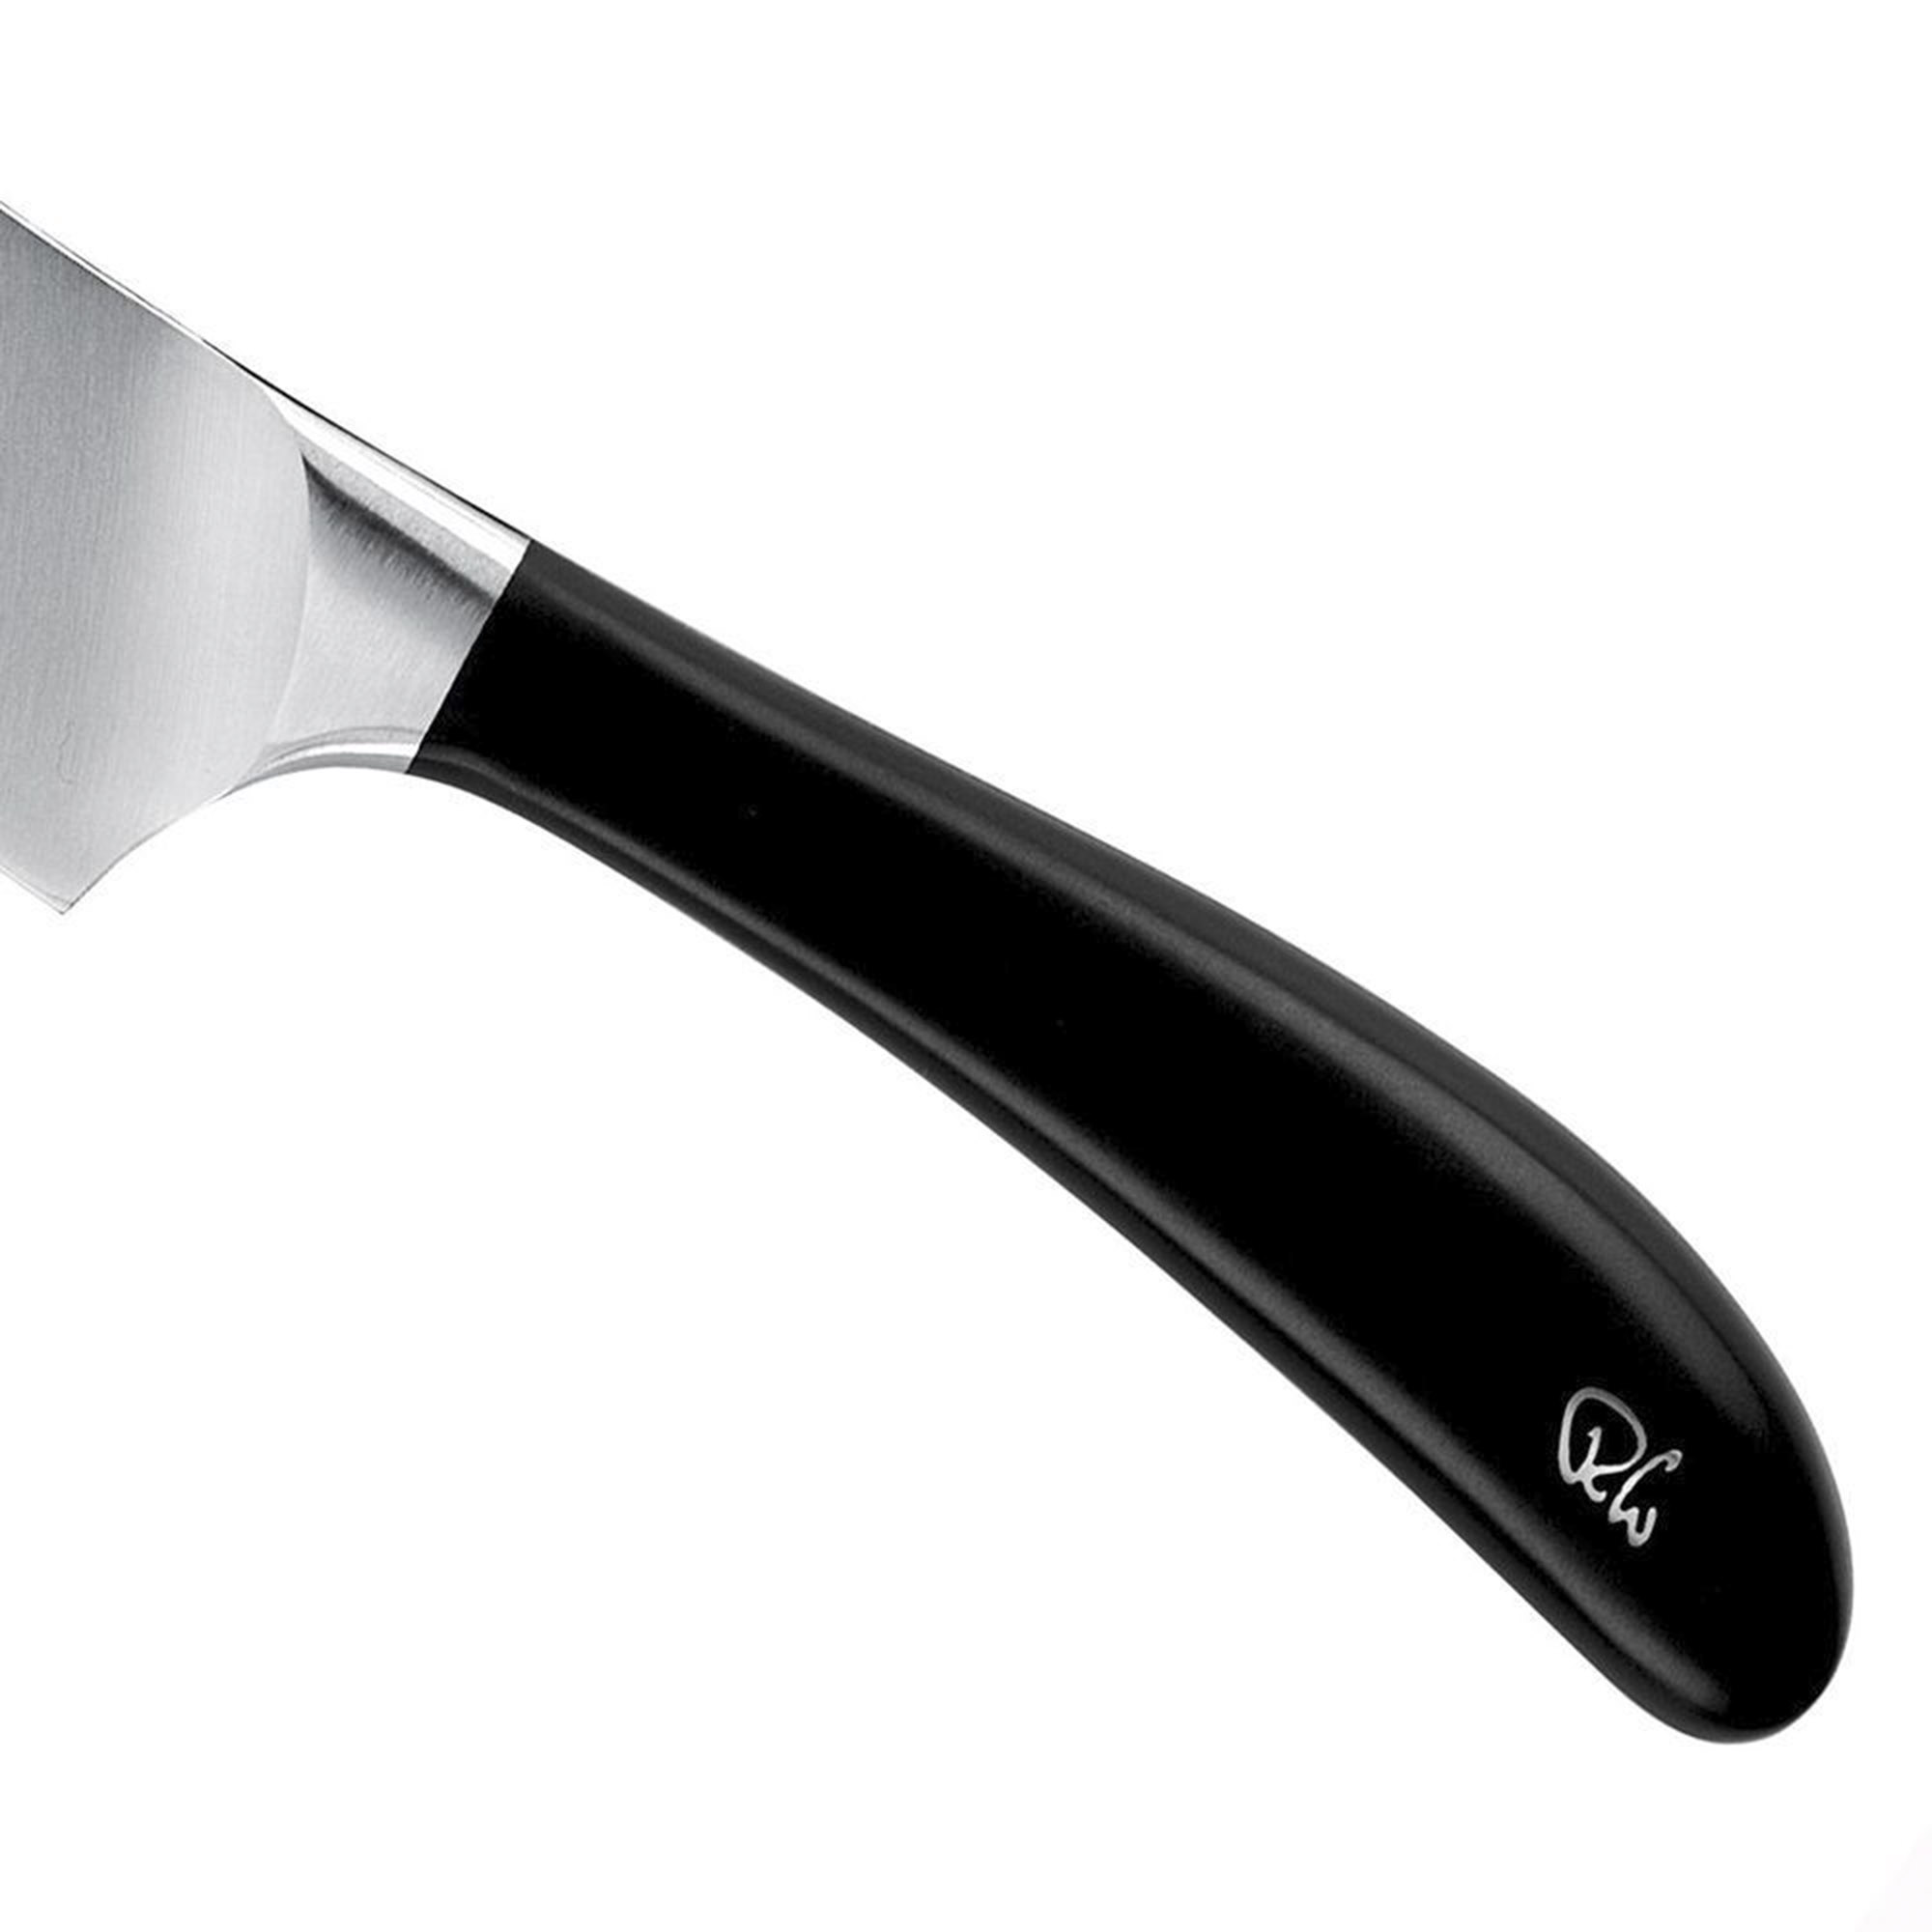 Поварской кухонный шеф-нож Robert Welch Signature 18 см, цвет серебряный - фото 3